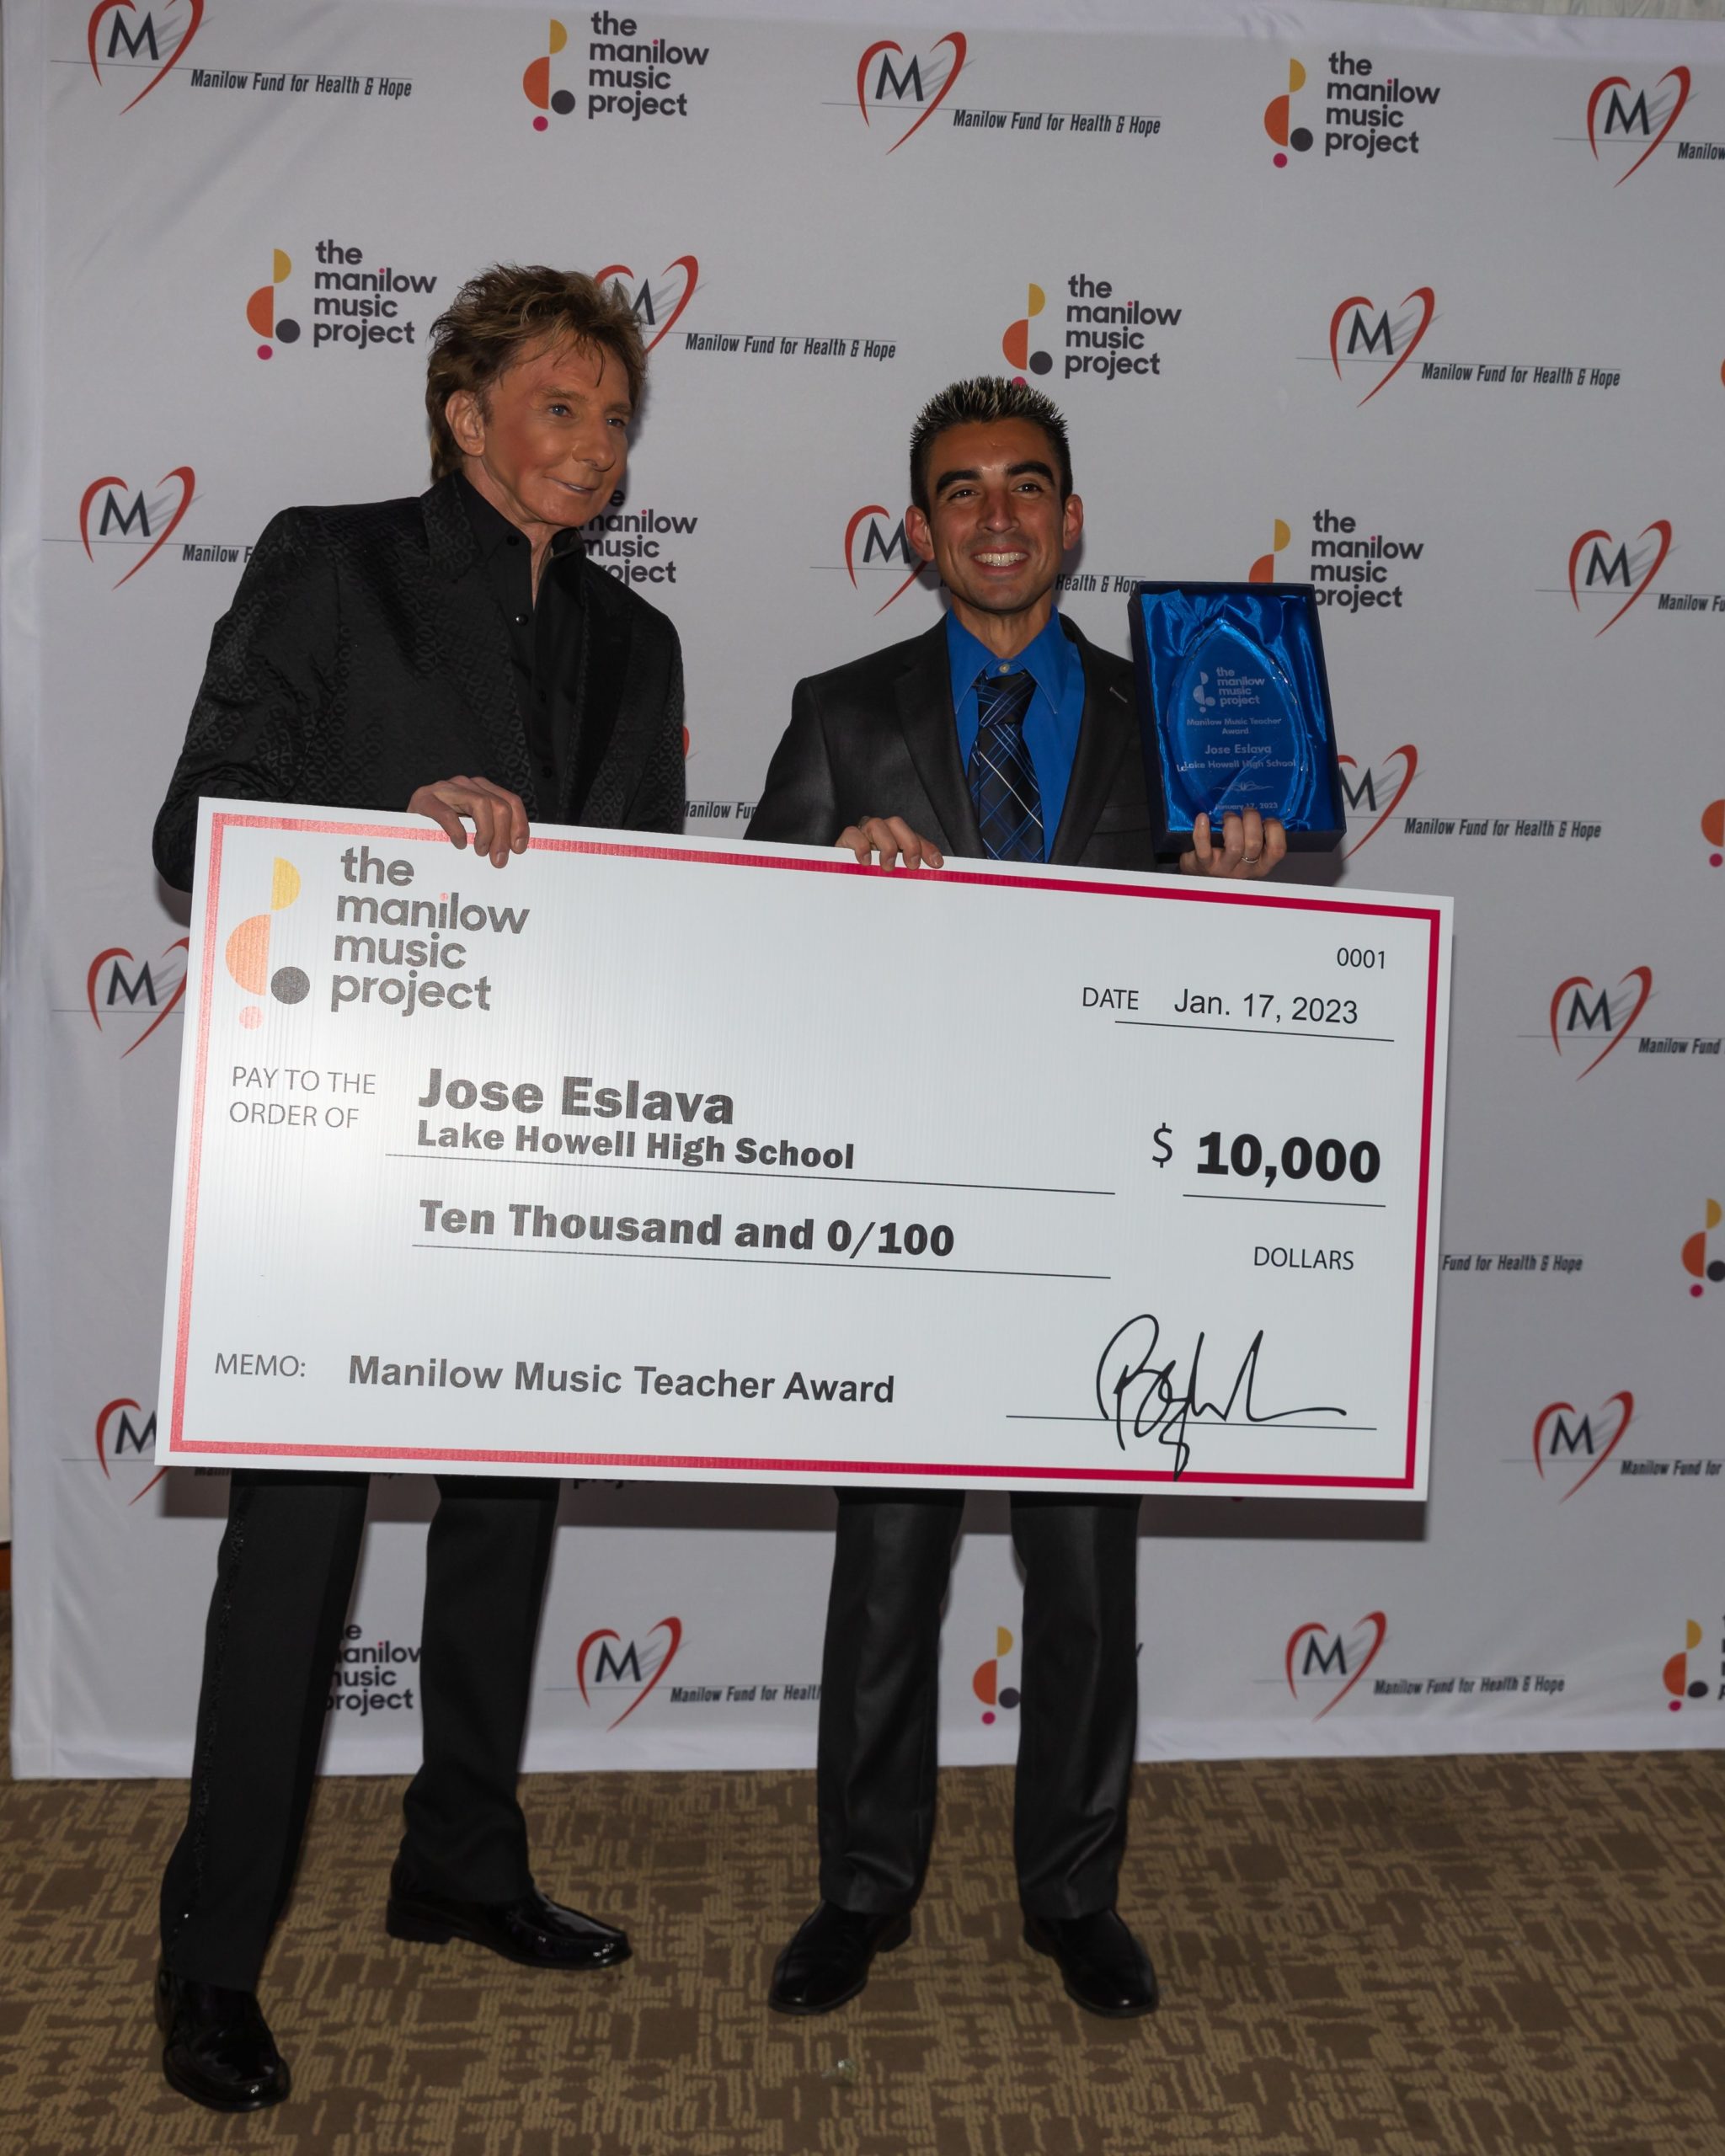 Congratulations to Manilow Music Teacher Award Winner Jose Eslava and